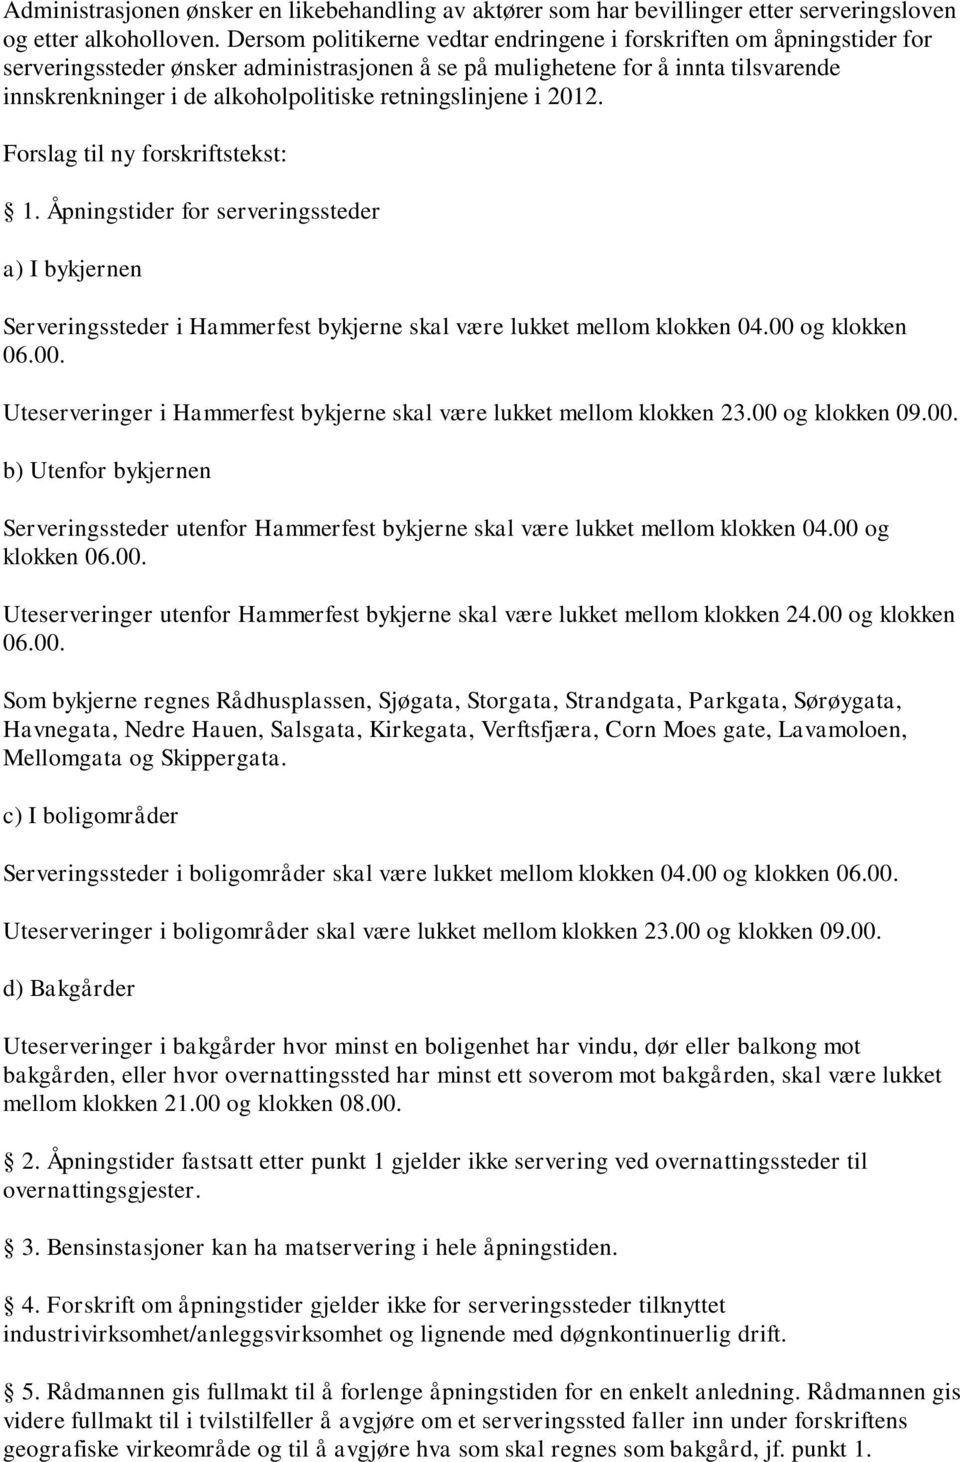 retningslinjene i 2012. Forslag til ny forskriftstekst: 1. Åpningstider for serveringssteder a) I bykjernen Serveringssteder i Hammerfest bykjerne skal være lukket mellom klokken 04.00 og klokken 06.